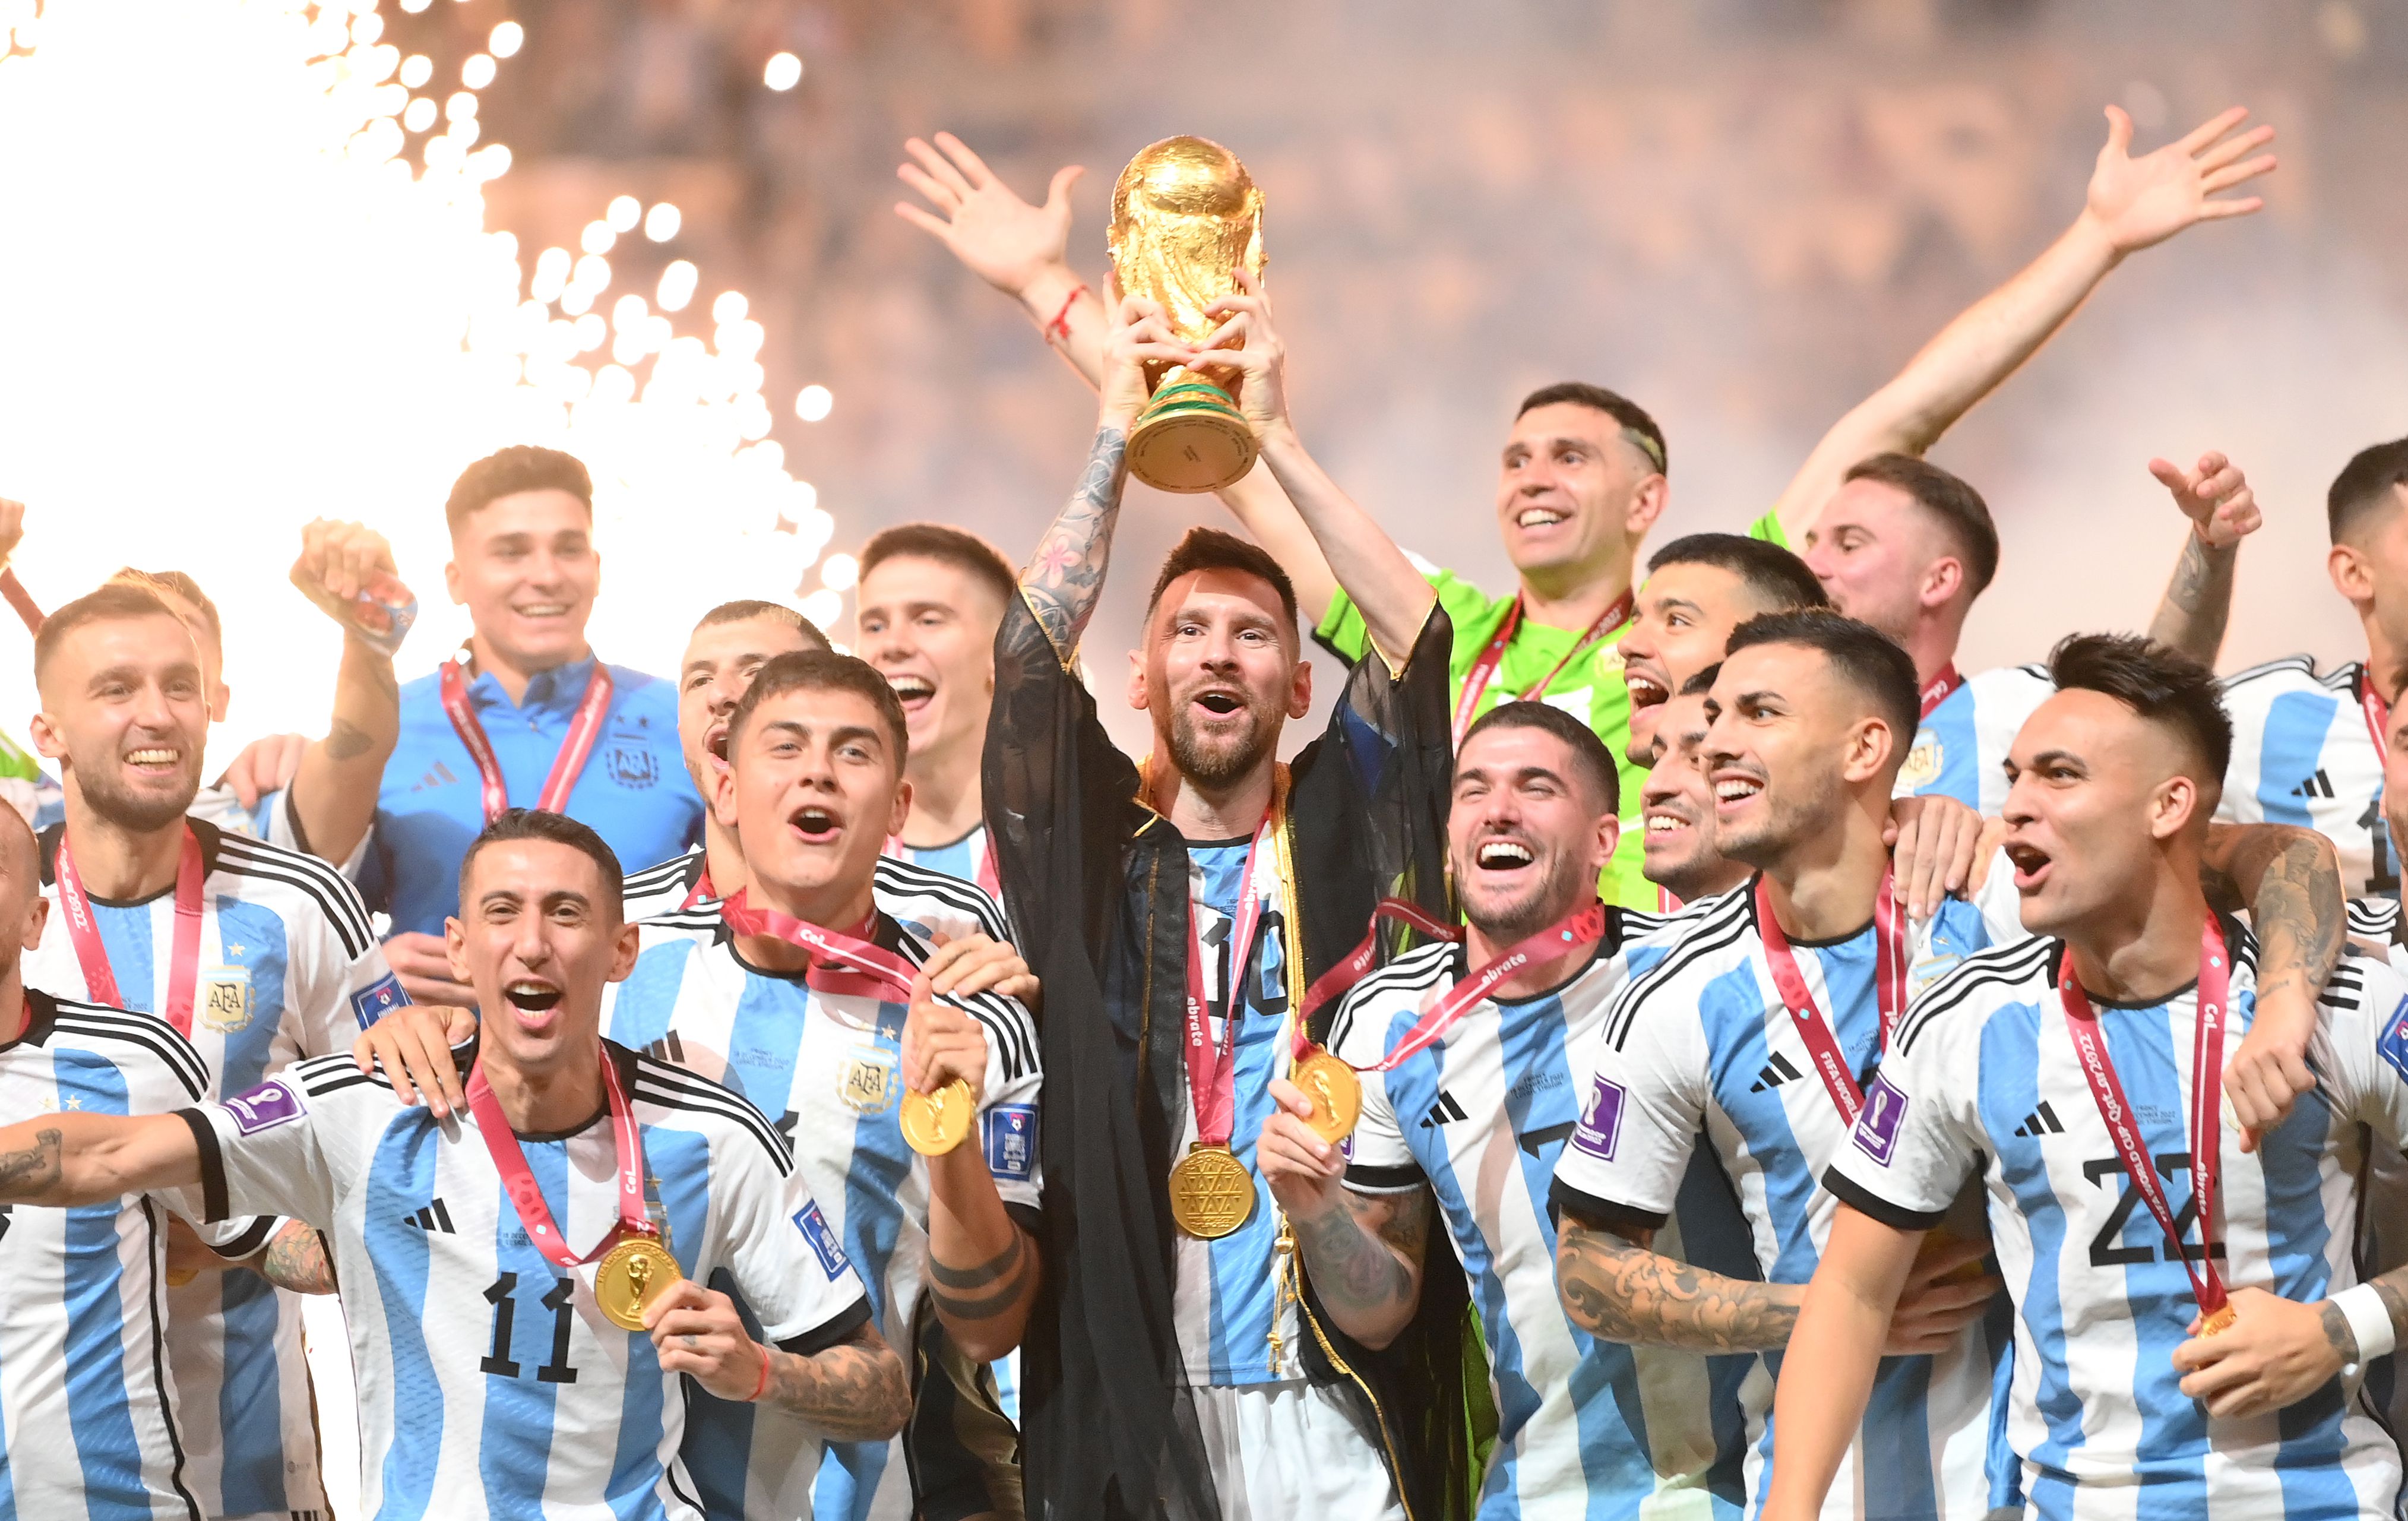 argentinabeatdefendingchampionsfrance42inpenaltiesinthefifaworldcupfinals